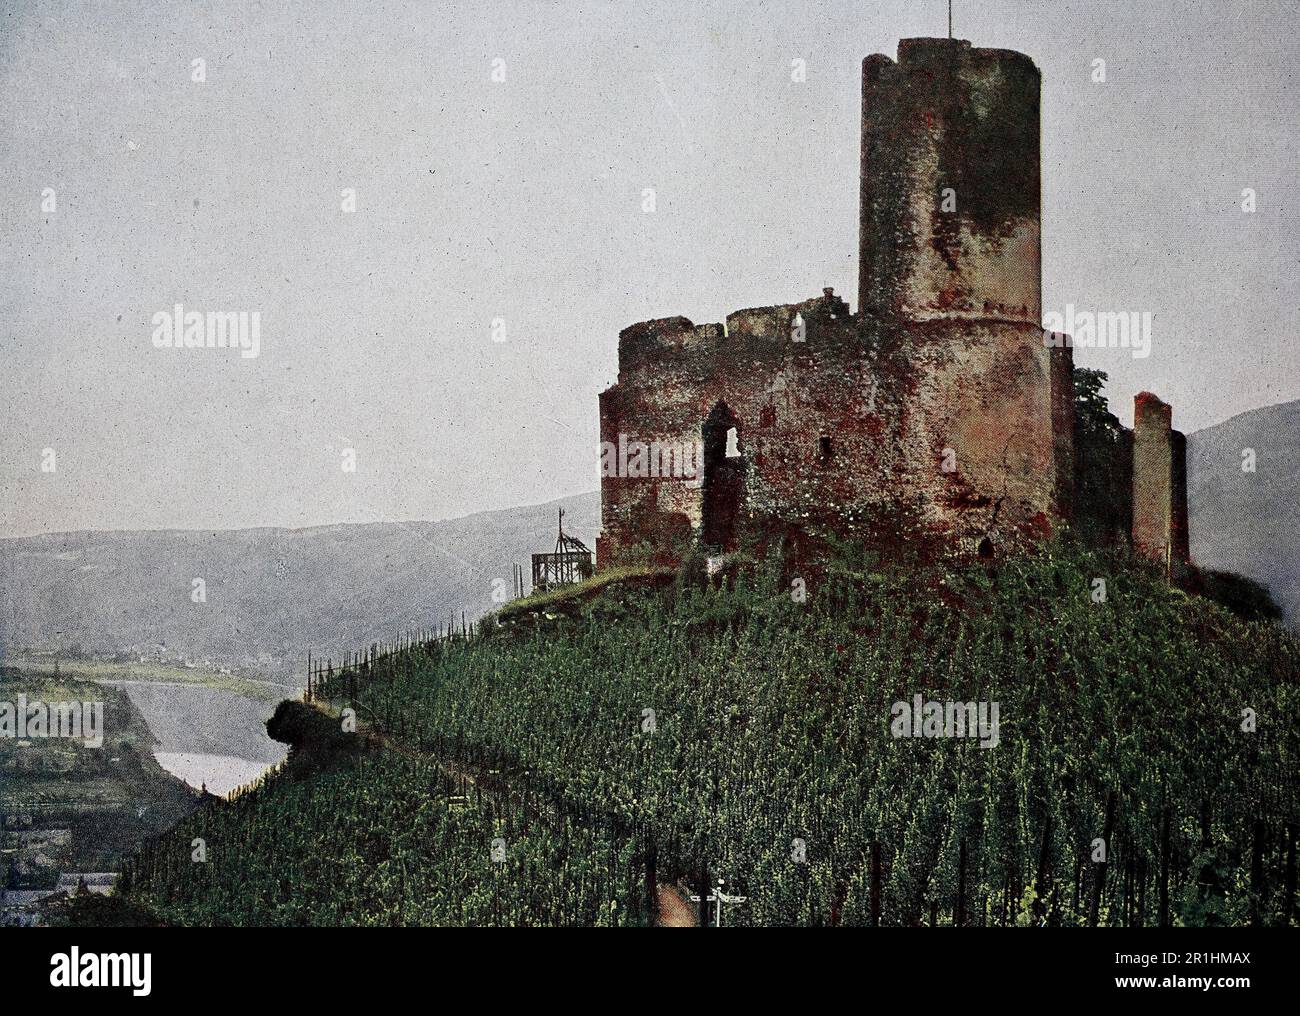 Burg Landshut BEI Bernkastel an der Mosel im Jahre 1910, Rheinland-Pfalz, Deutschland, Fotografie, digital restaurierte Reproduktion einer Originalvorlage aus dem frühen 20. Jahrhundert, genaues Originaldatum nicht bekannt Banque D'Images